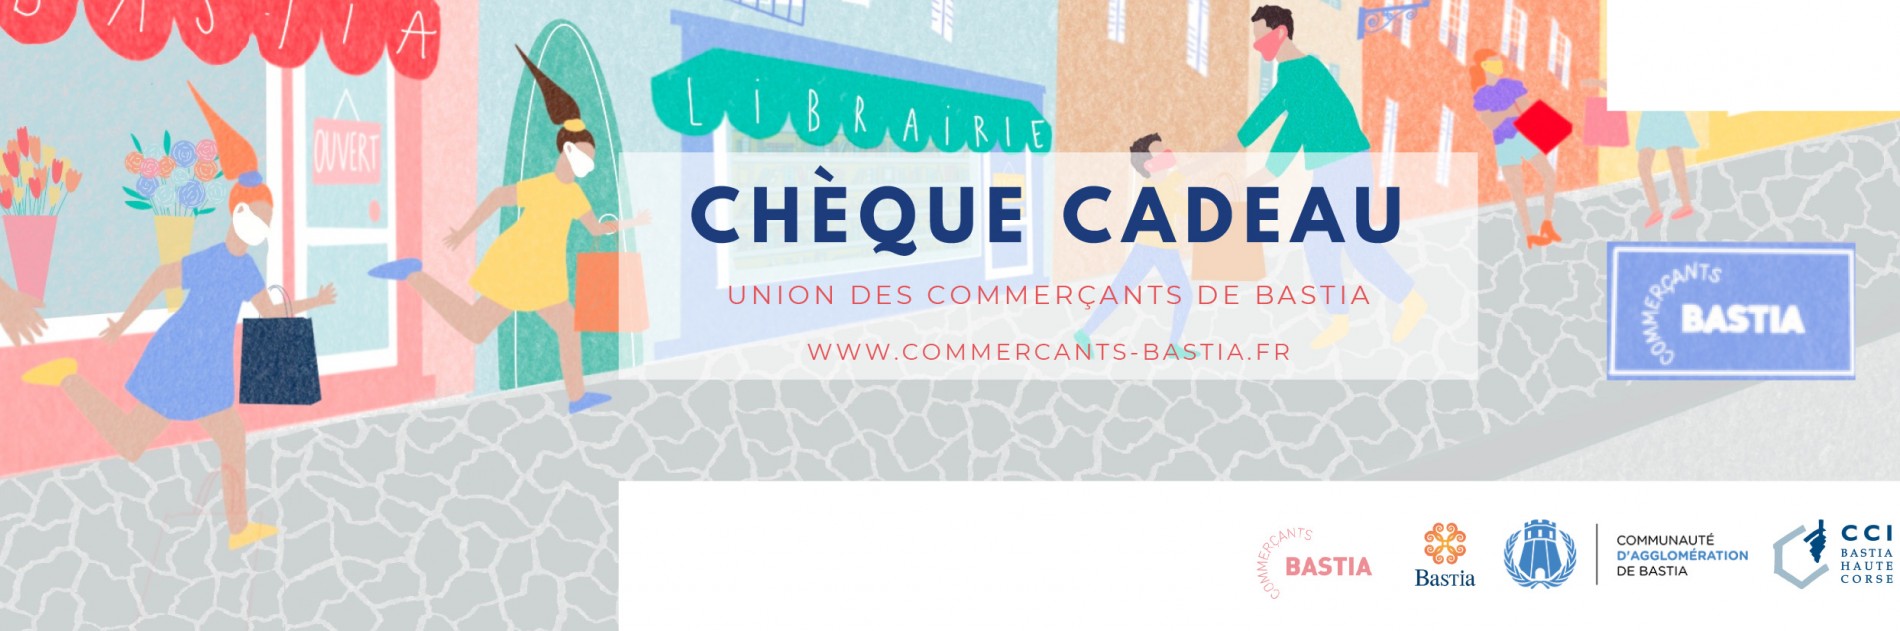 Union des Commerçants de Bastia - CHEQUE CADEAU BASTIA 